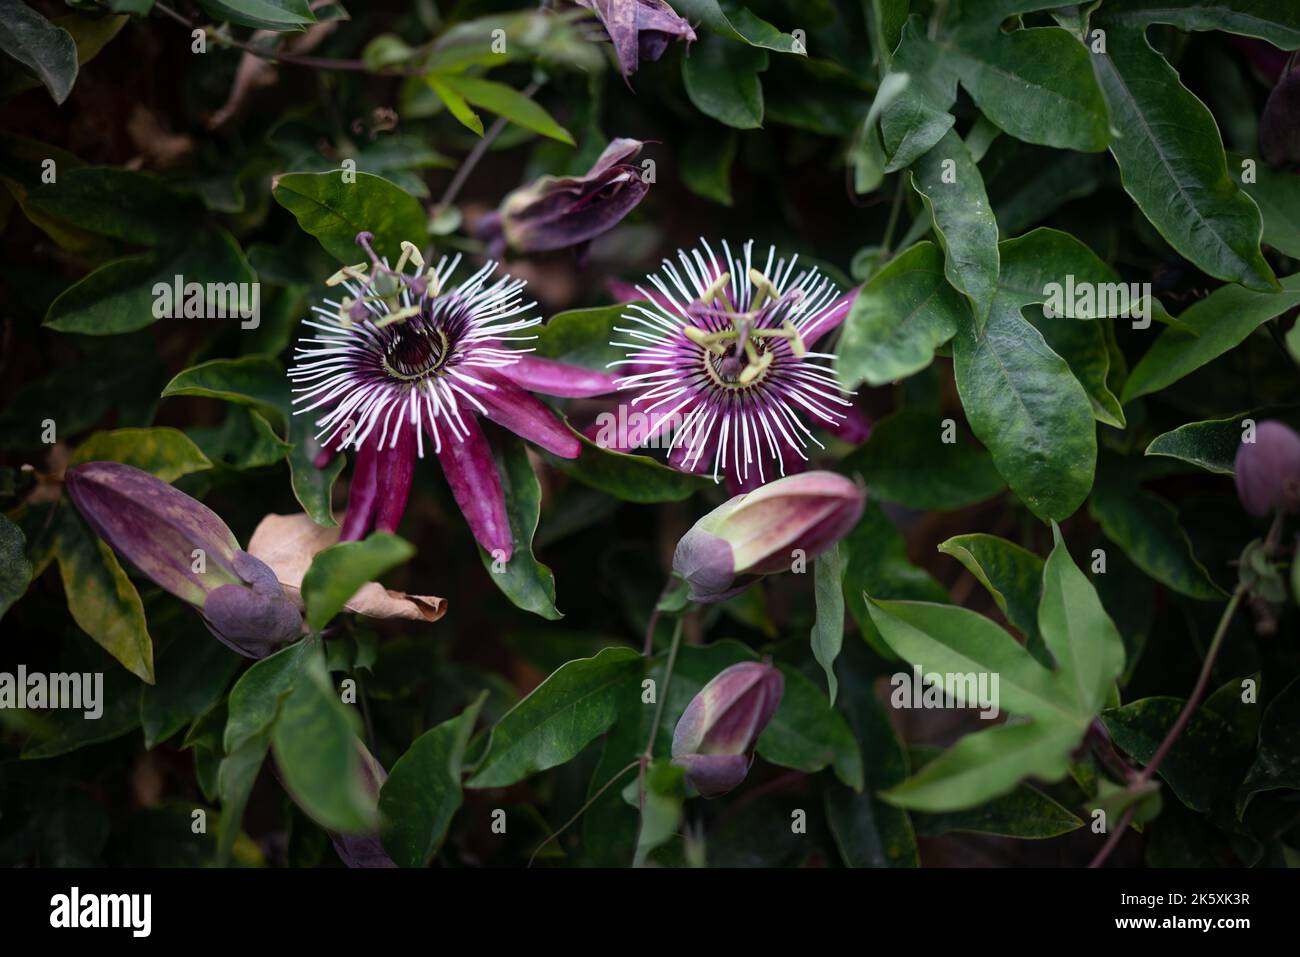 Viola fiore passione con lunghi petali viola-viola, viola passiflora Foto Stock